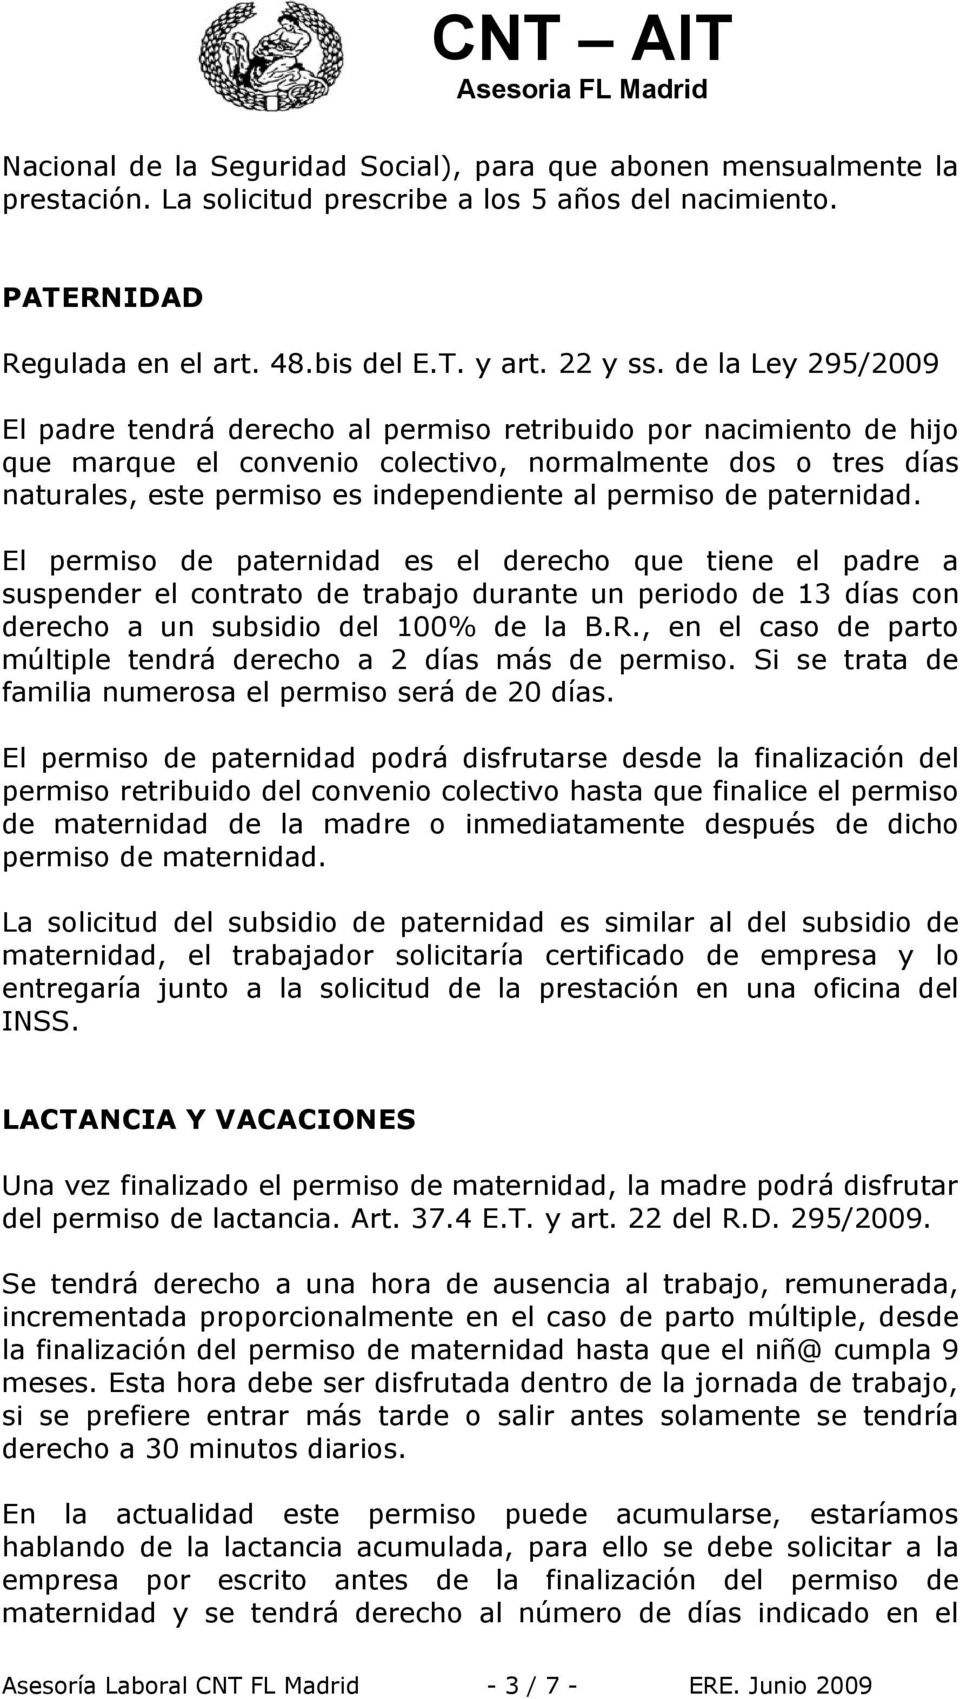 permiso de paternidad. El permiso de paternidad es el derecho que tiene el padre a suspender el contrato de trabajo durante un periodo de 13 días con derecho a un subsidio del 100% de la B.R.